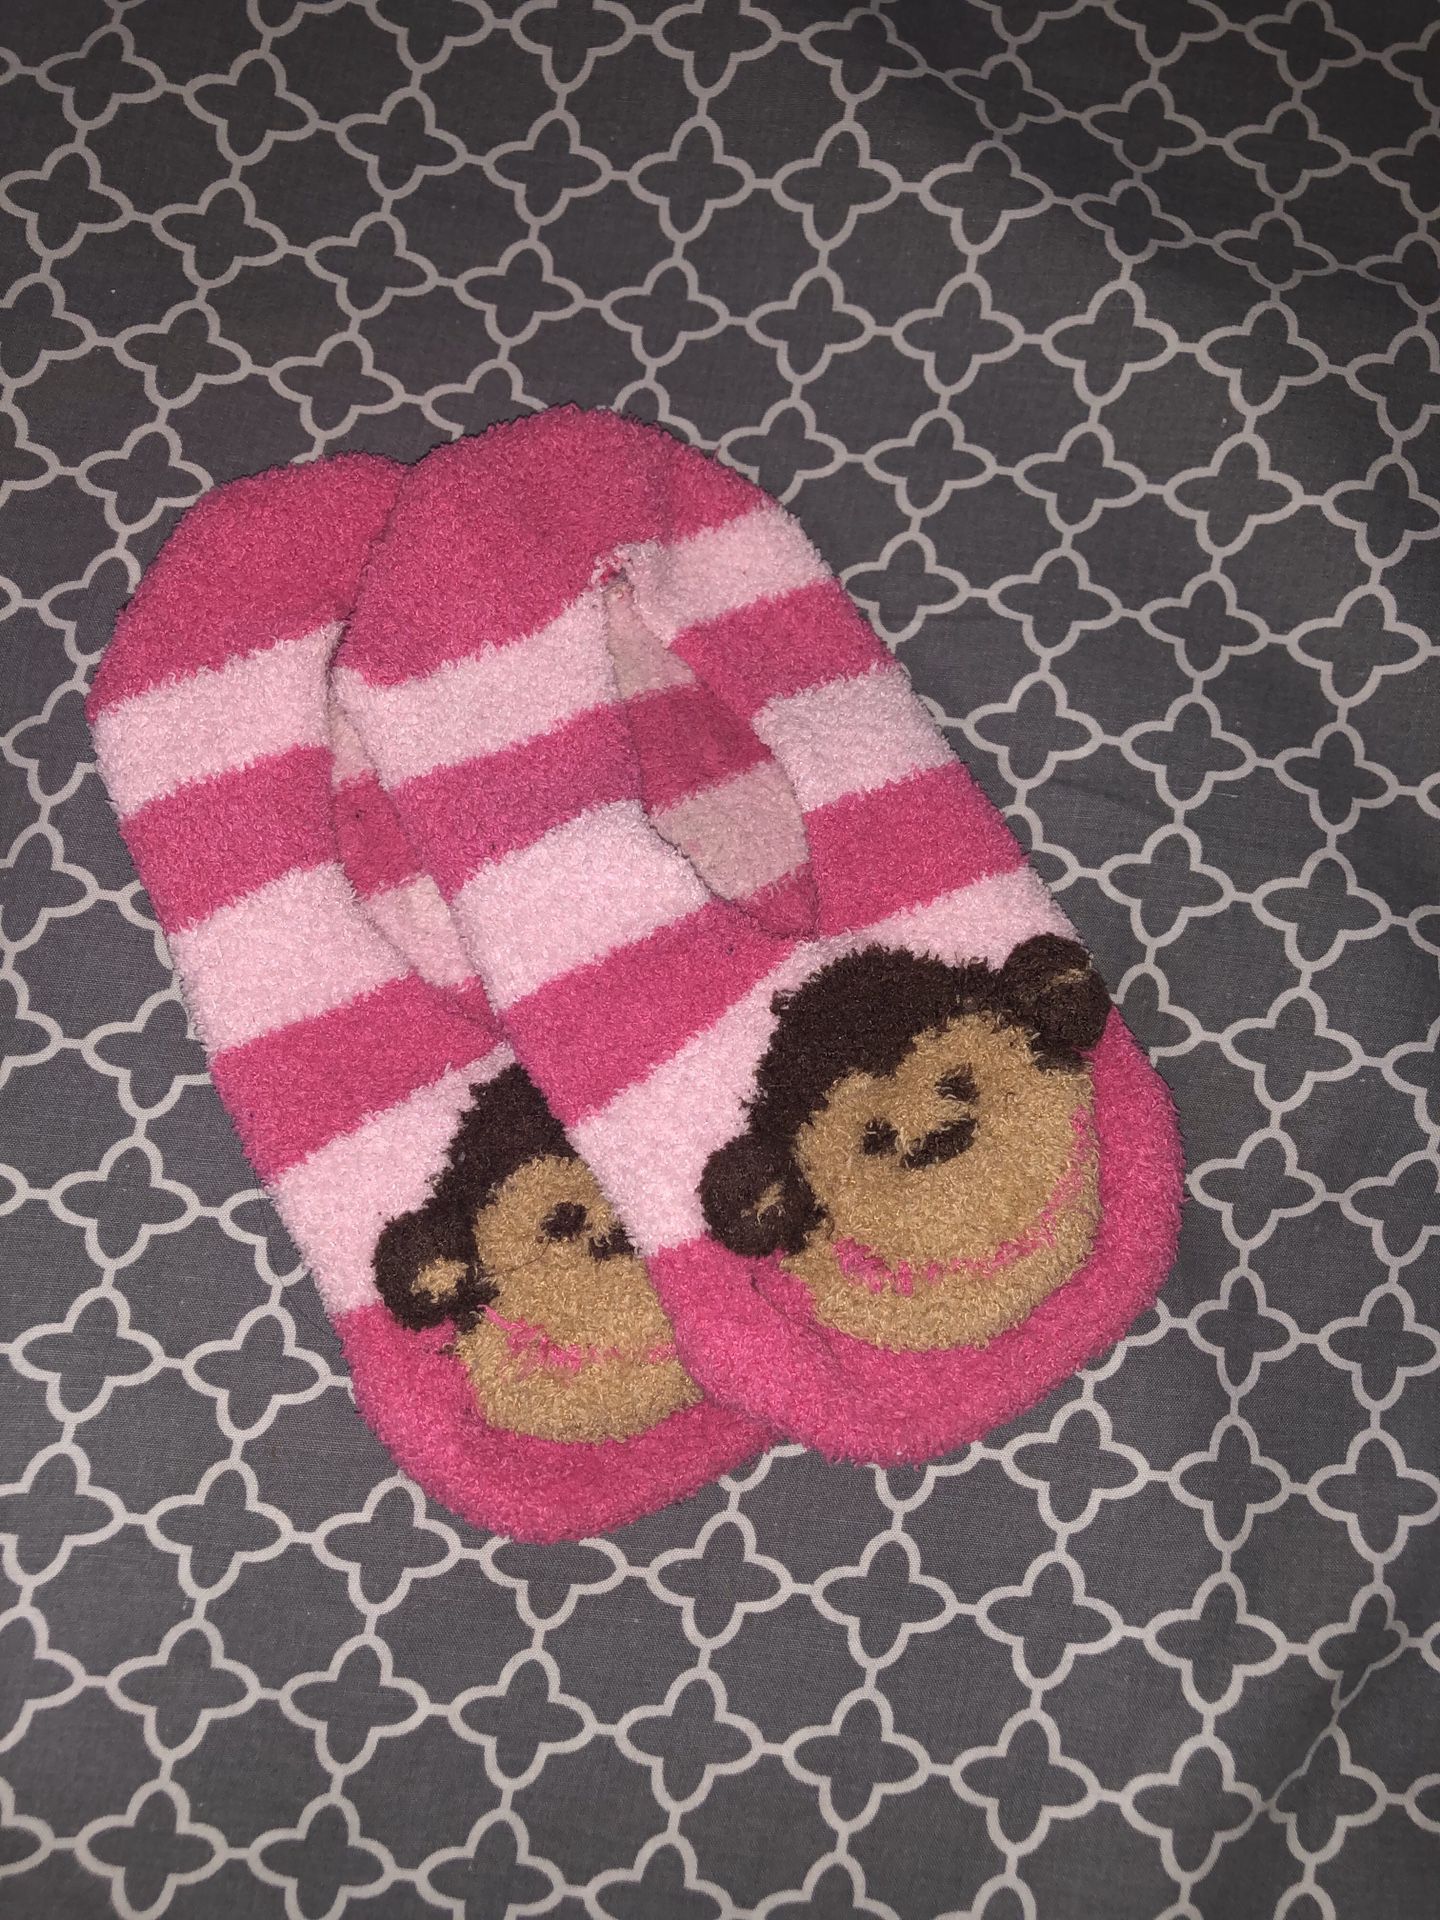 Sock slipper monkeys size 2-3 in girls